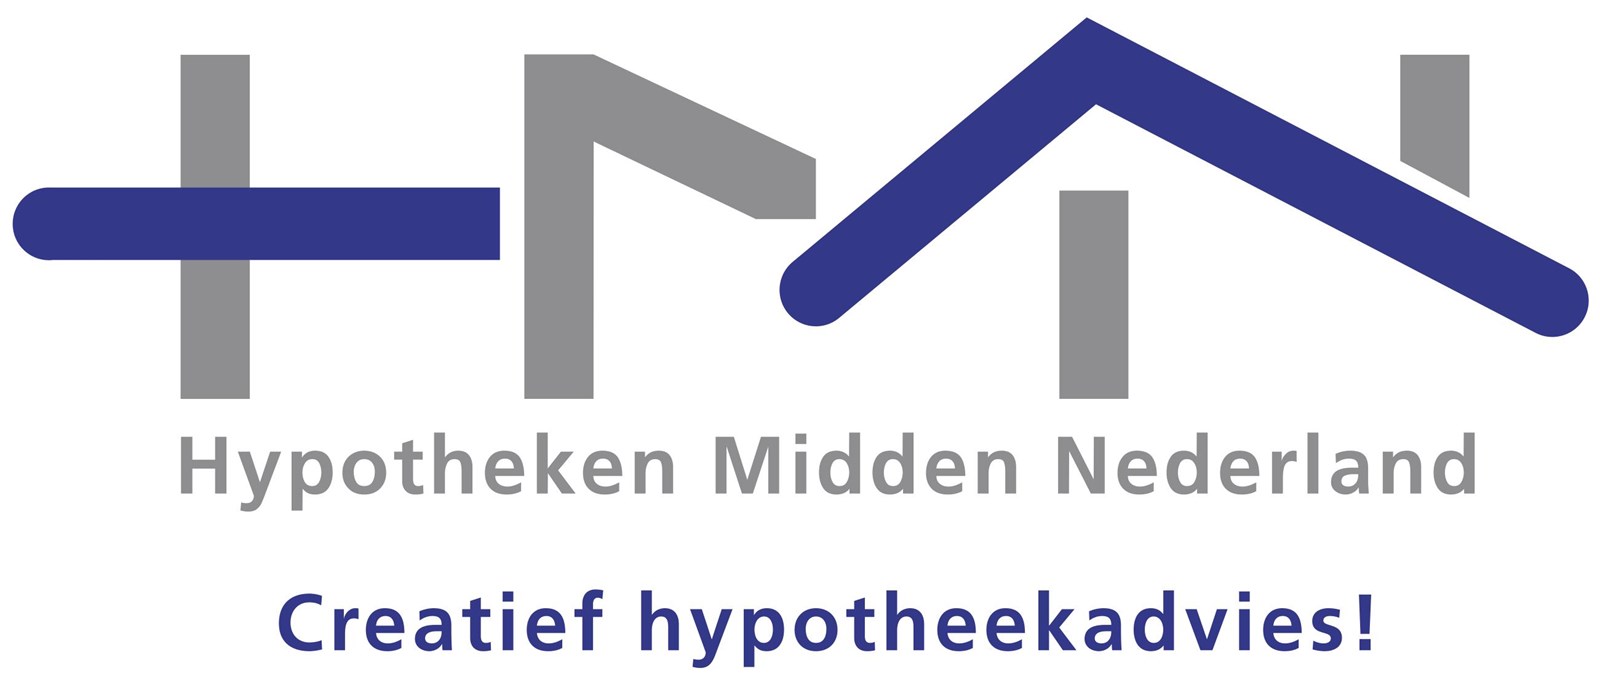 Afbeelding van Hypotheken Midden Nederland